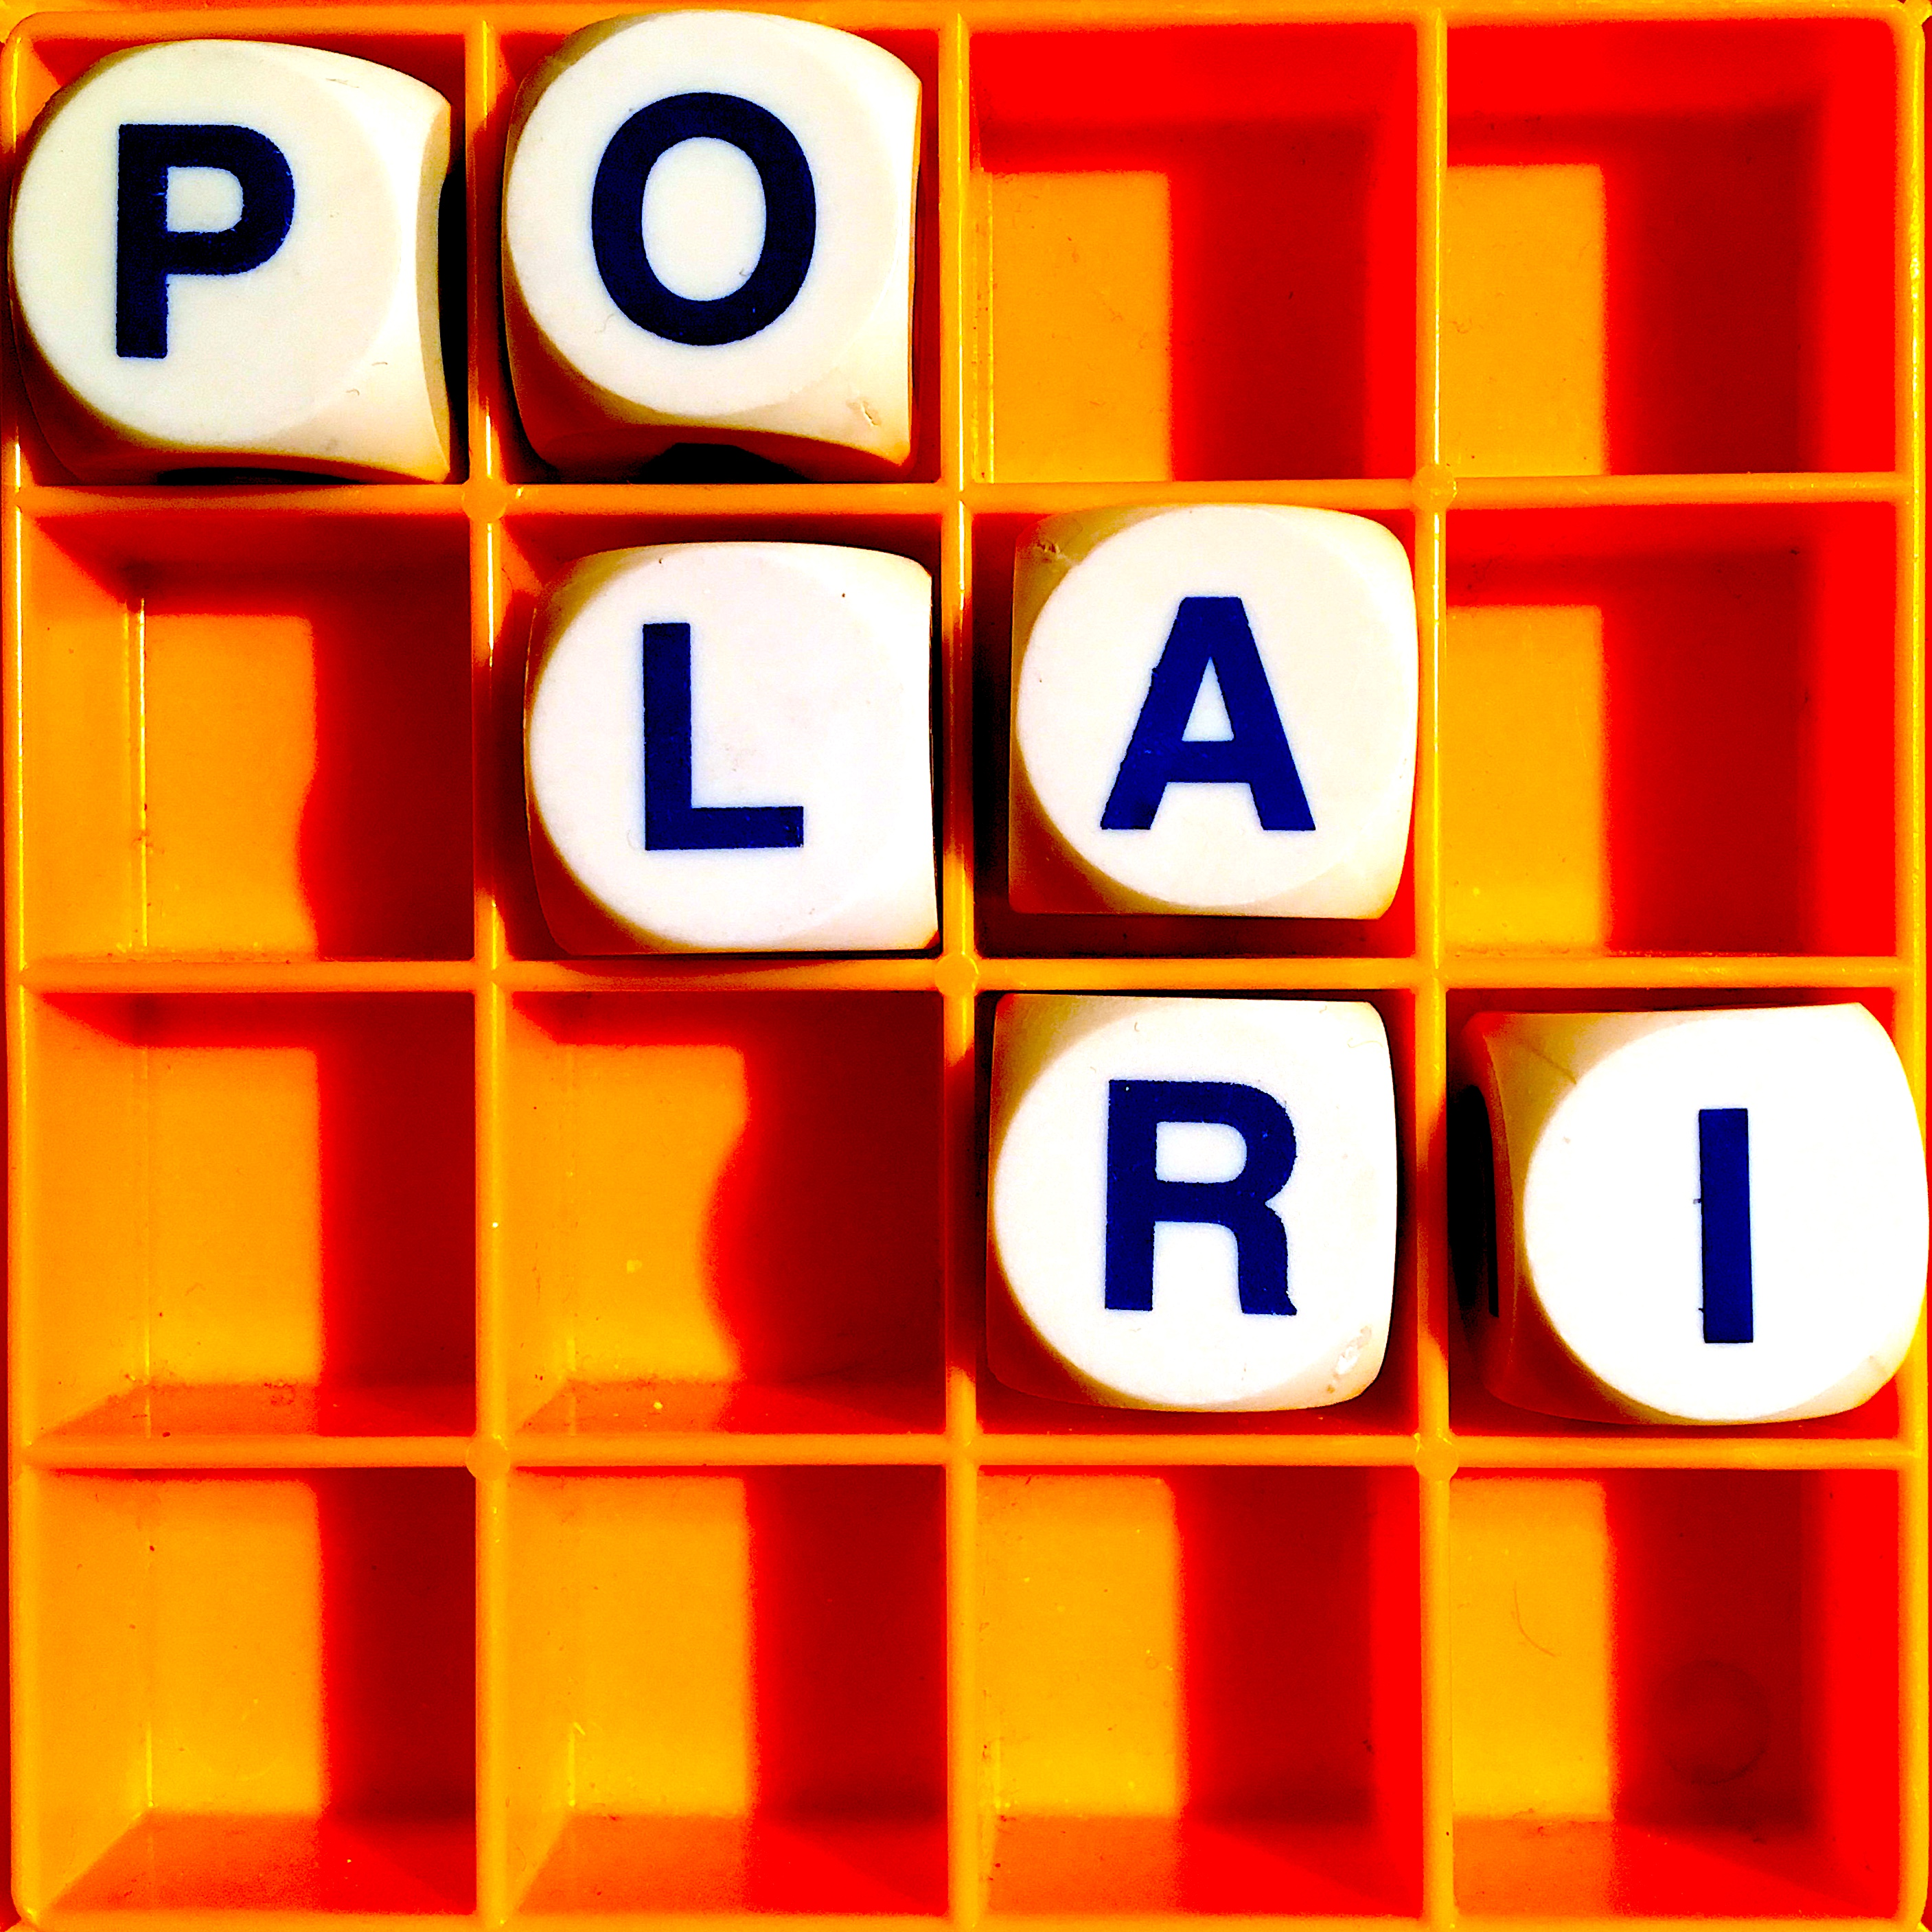 Thumbnail for "99. Polari".